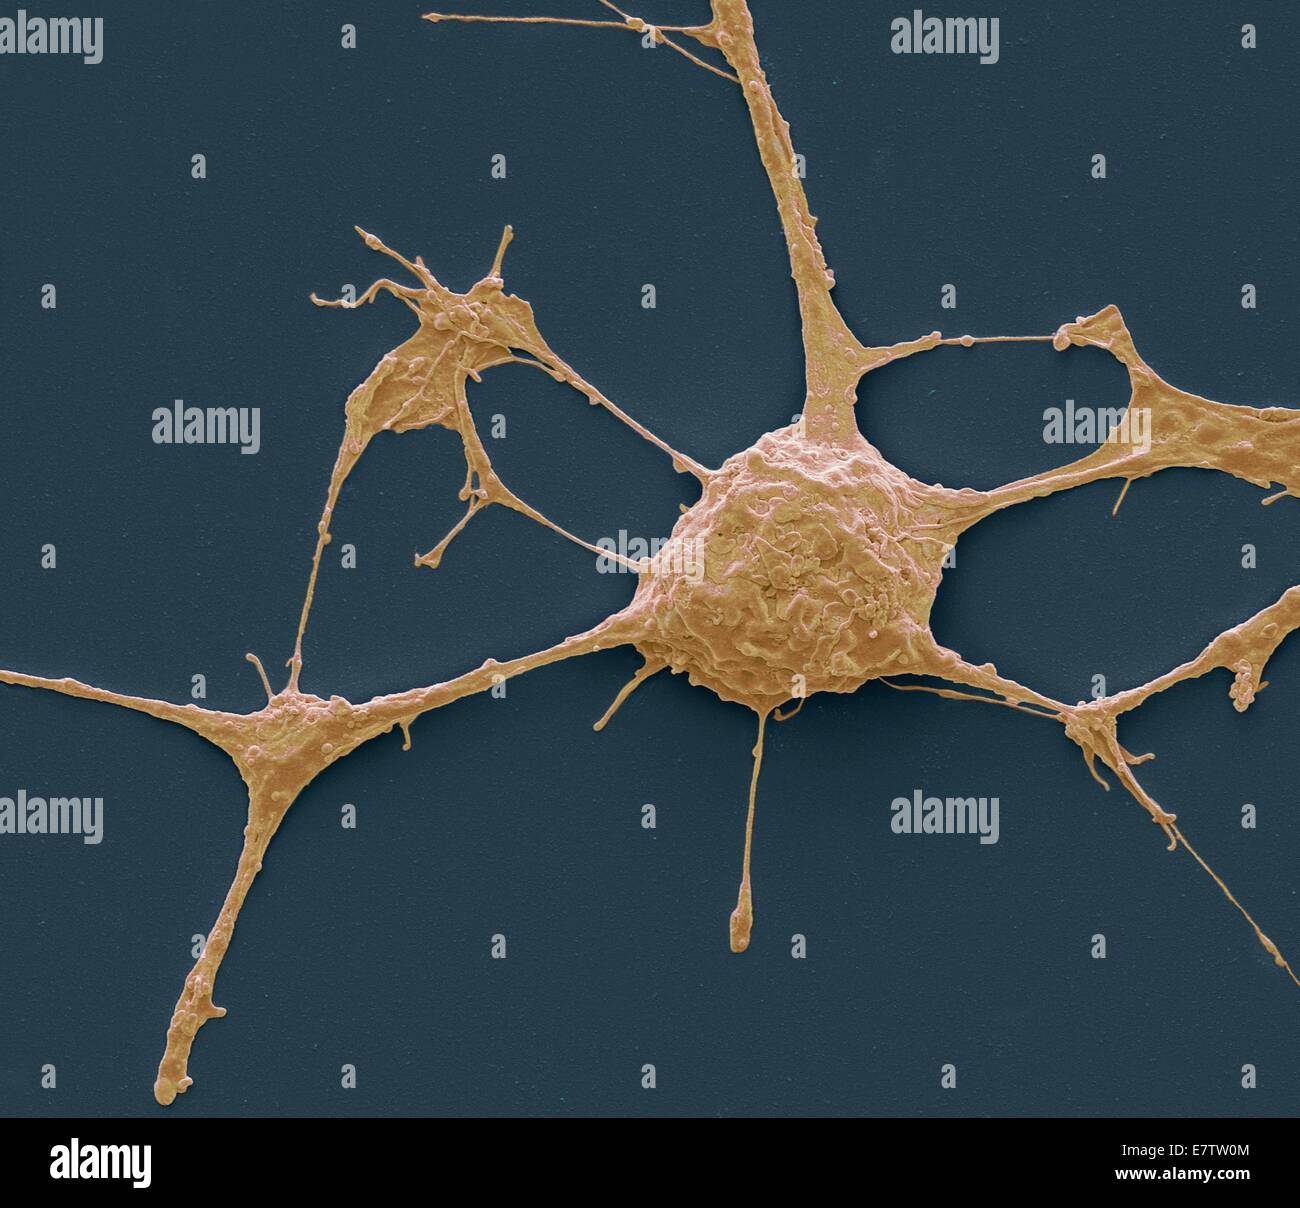 Neurone. Scanning Electron Schliffbild (SEM) von einem PC12 Neurone in Kultur. PC12 Zelllinie, entwickelt von einem Phäochromozytom Tumor von der Ratte Nebennierenmark, ist eine Premiere Modell für die Untersuchung der neuronalen Differenzierung geworden. Wenn Kultur behandelt Stockfoto